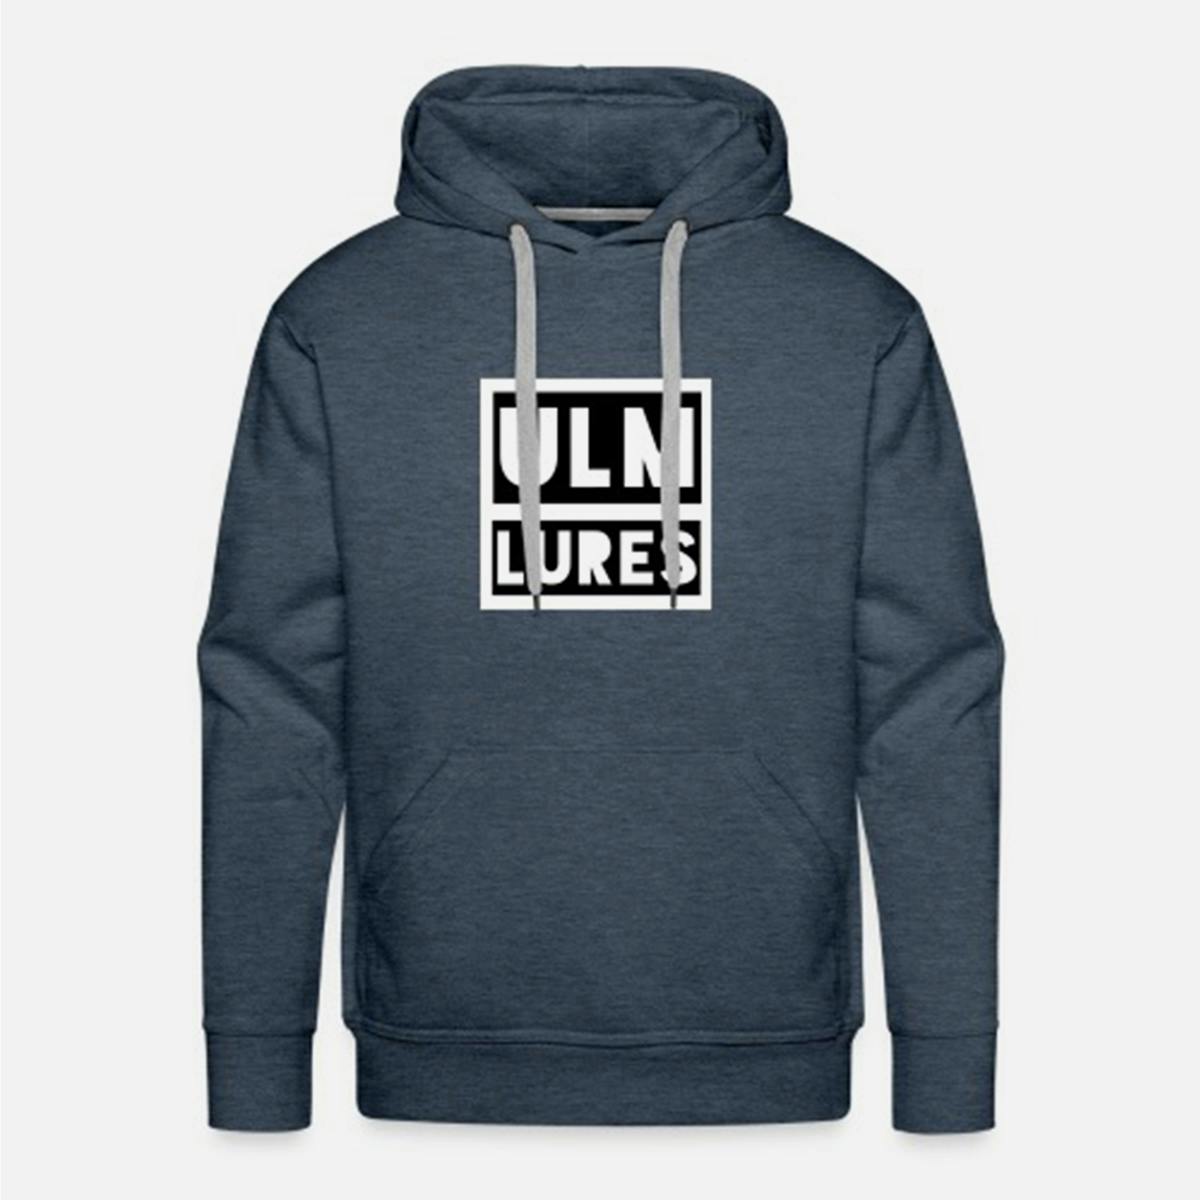 Ulm Lures Logo Hoodie - Denim Blue